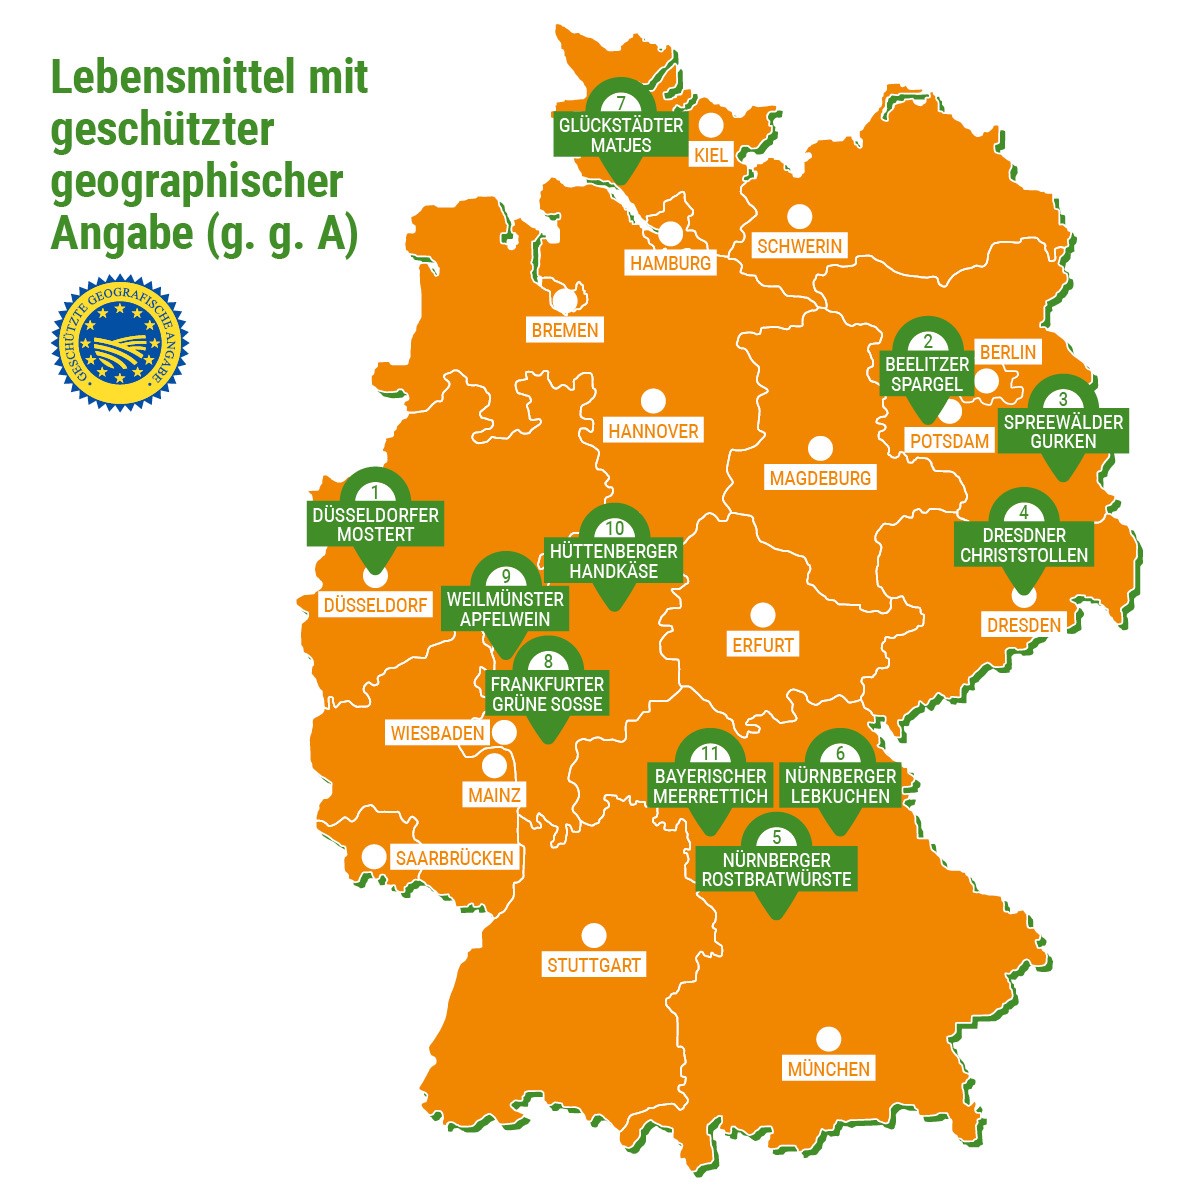 Deutschlandkarte mit Kennzeichnung aller geschützter geographischer Angaben, über die das Lebensmittelmagazin bereits berichtet hat.